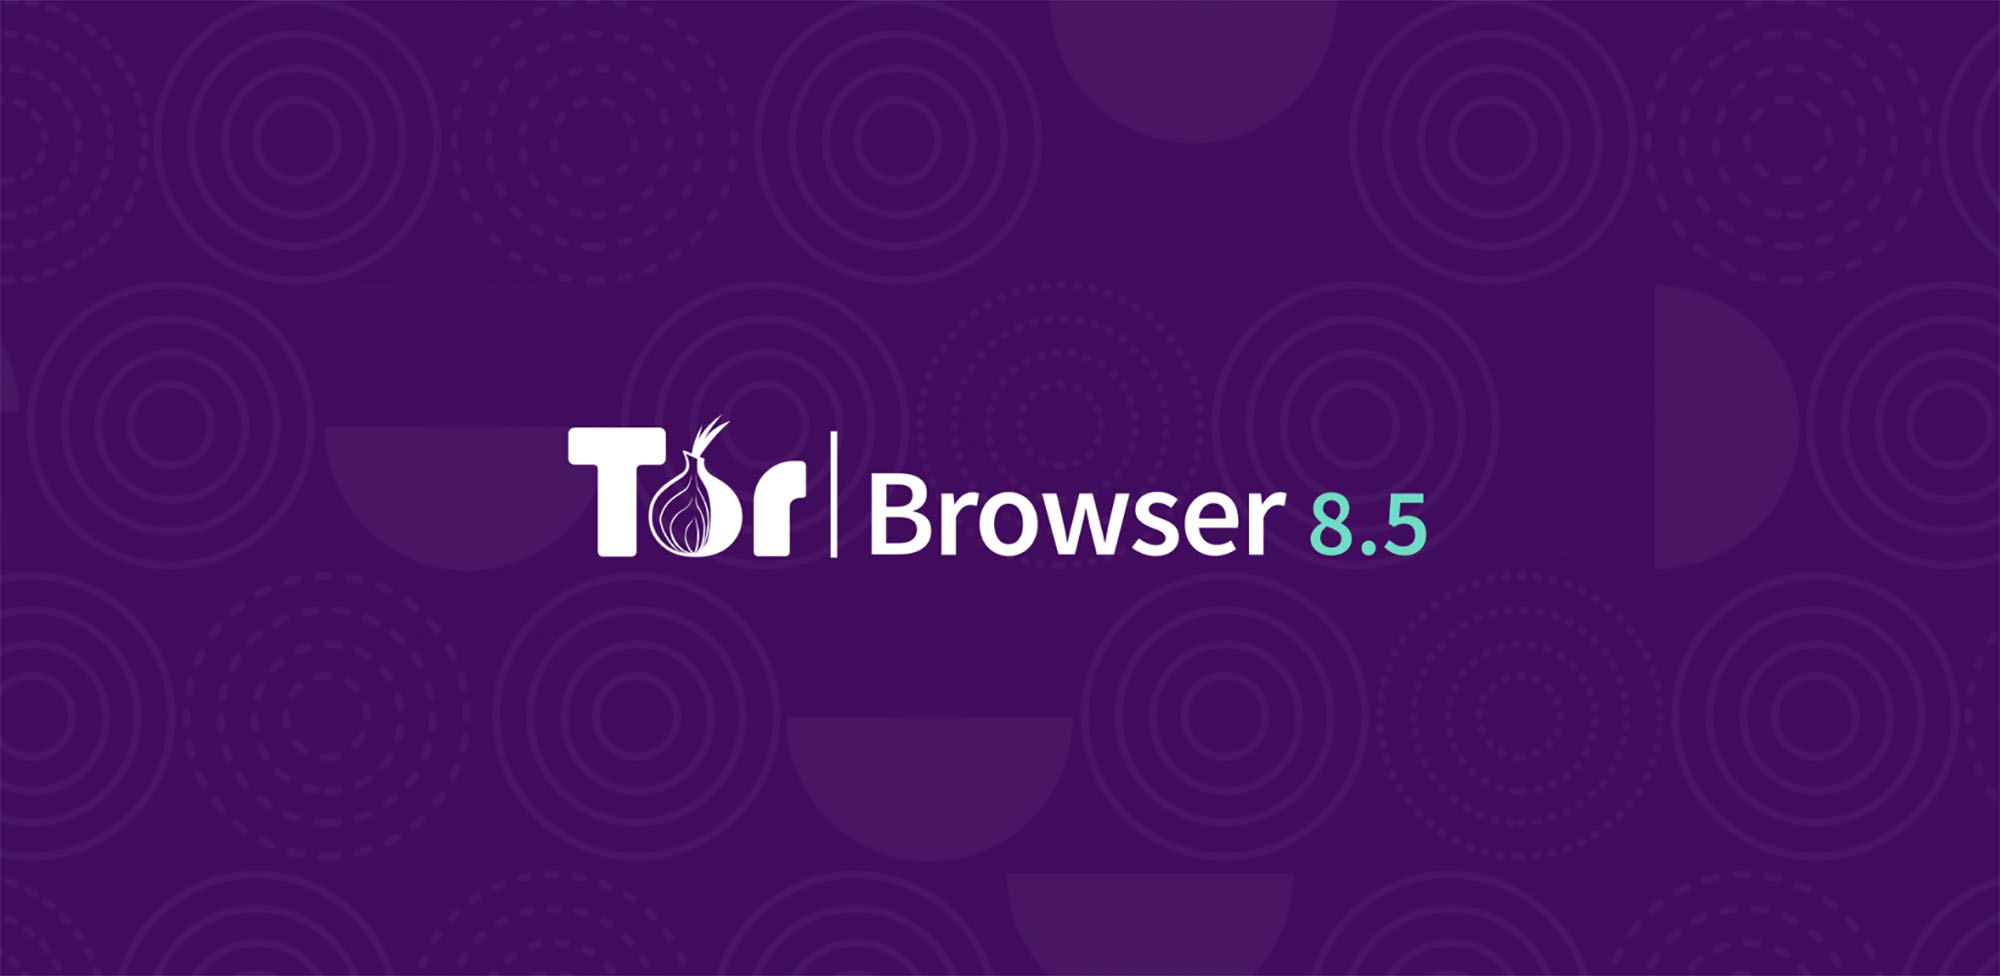 Tor browser for windows что это hidra как установить tor browser windows 10 hudra